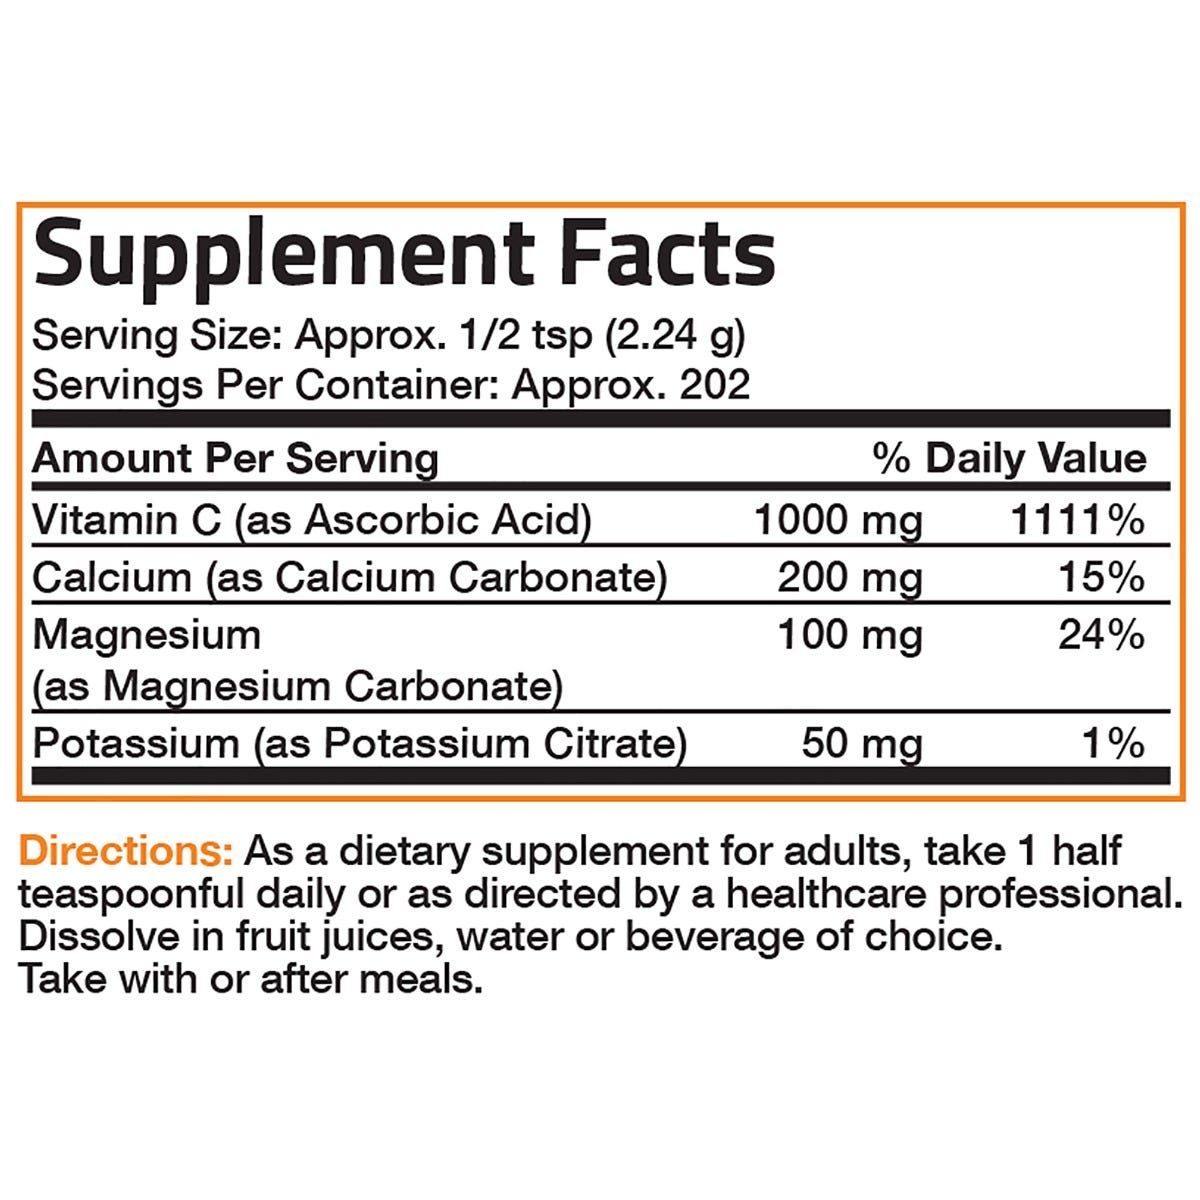 Vitamin C Powder with Calcium, Magnesium, Potassium - 1 lb (454g)